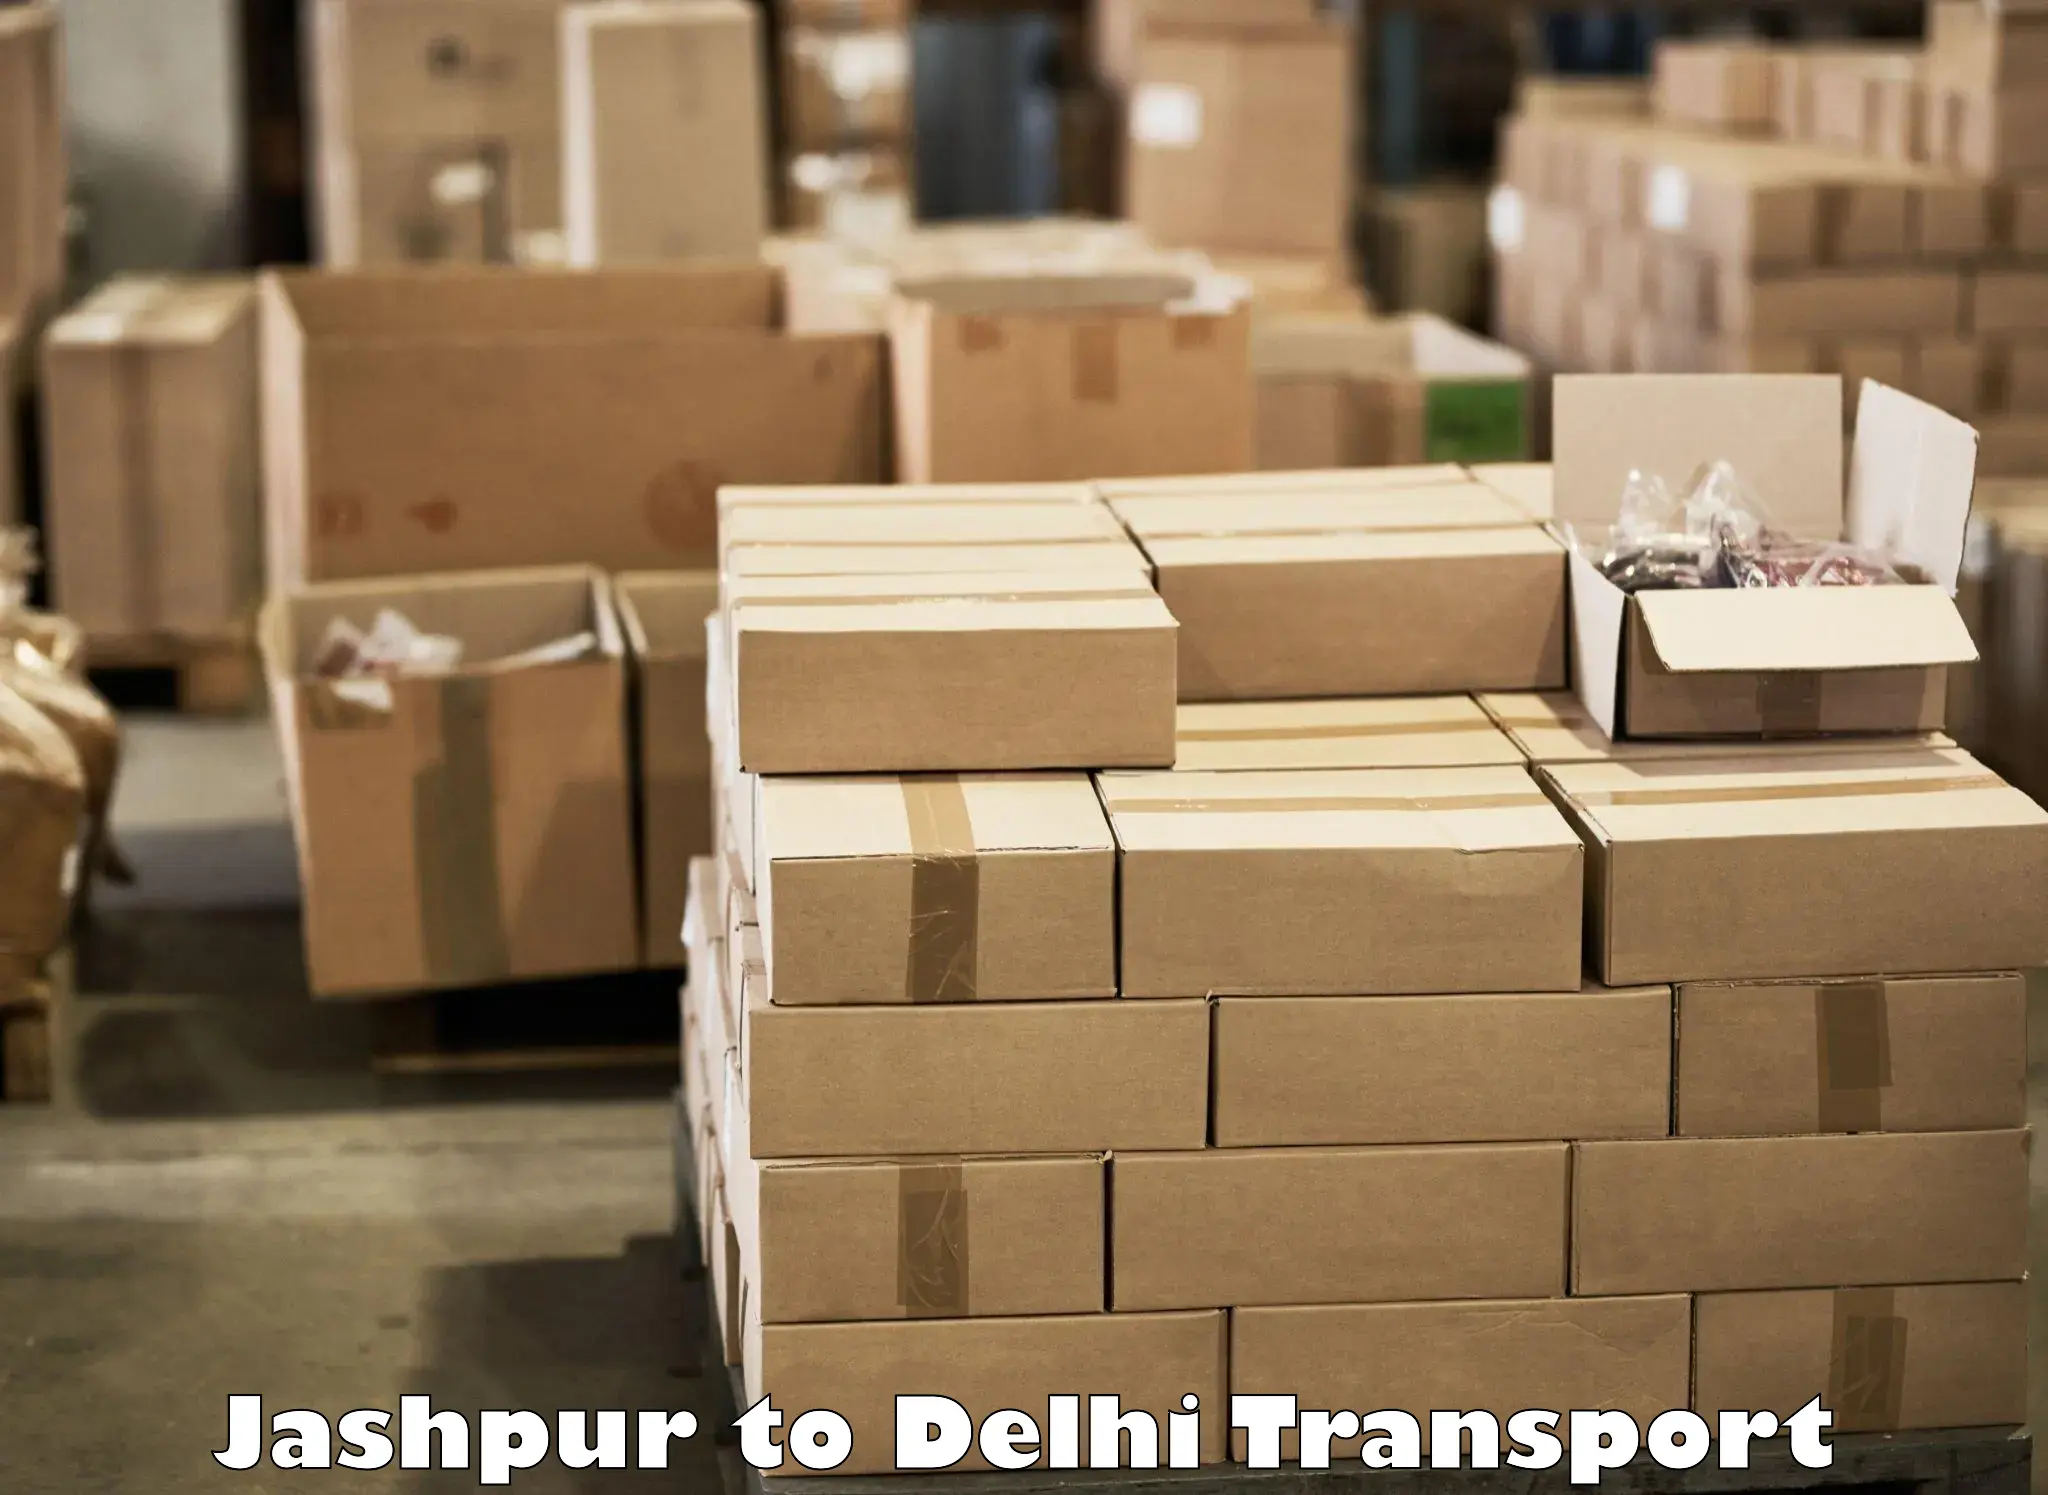 Interstate transport services Jashpur to NIT Delhi